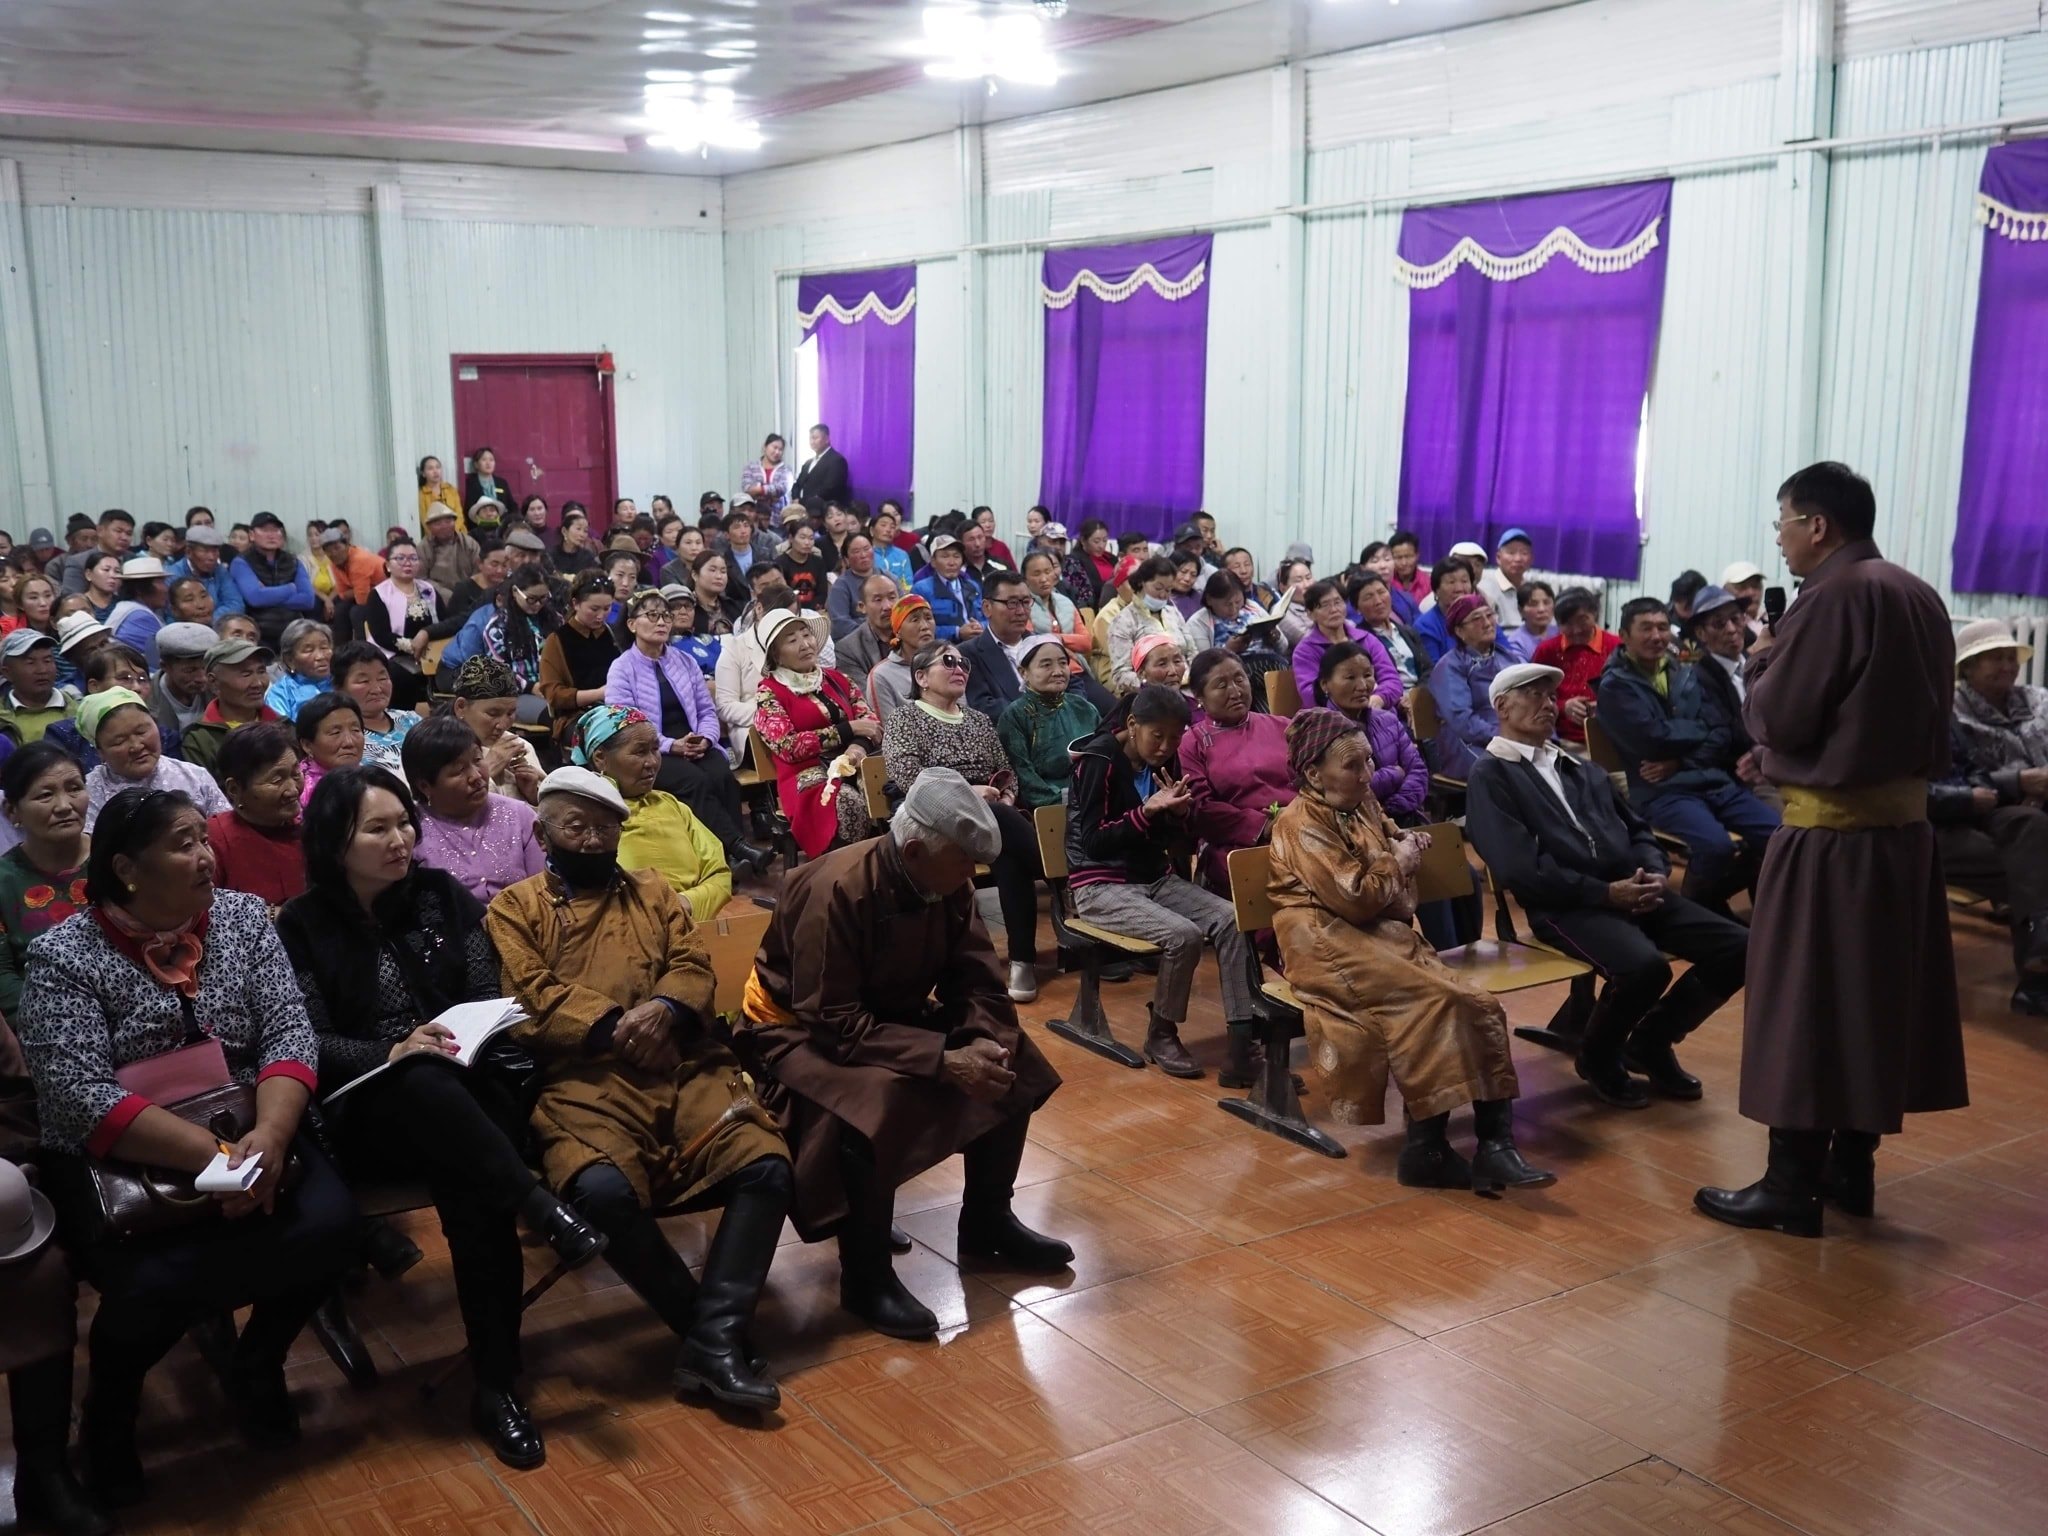 УИХ-ын гишүүн Л.Энх-Амгалан Хөвсгөл аймгийн Тосонцэнгэл, Түнэл сумын иргэдтэй уулзалт хийлээ